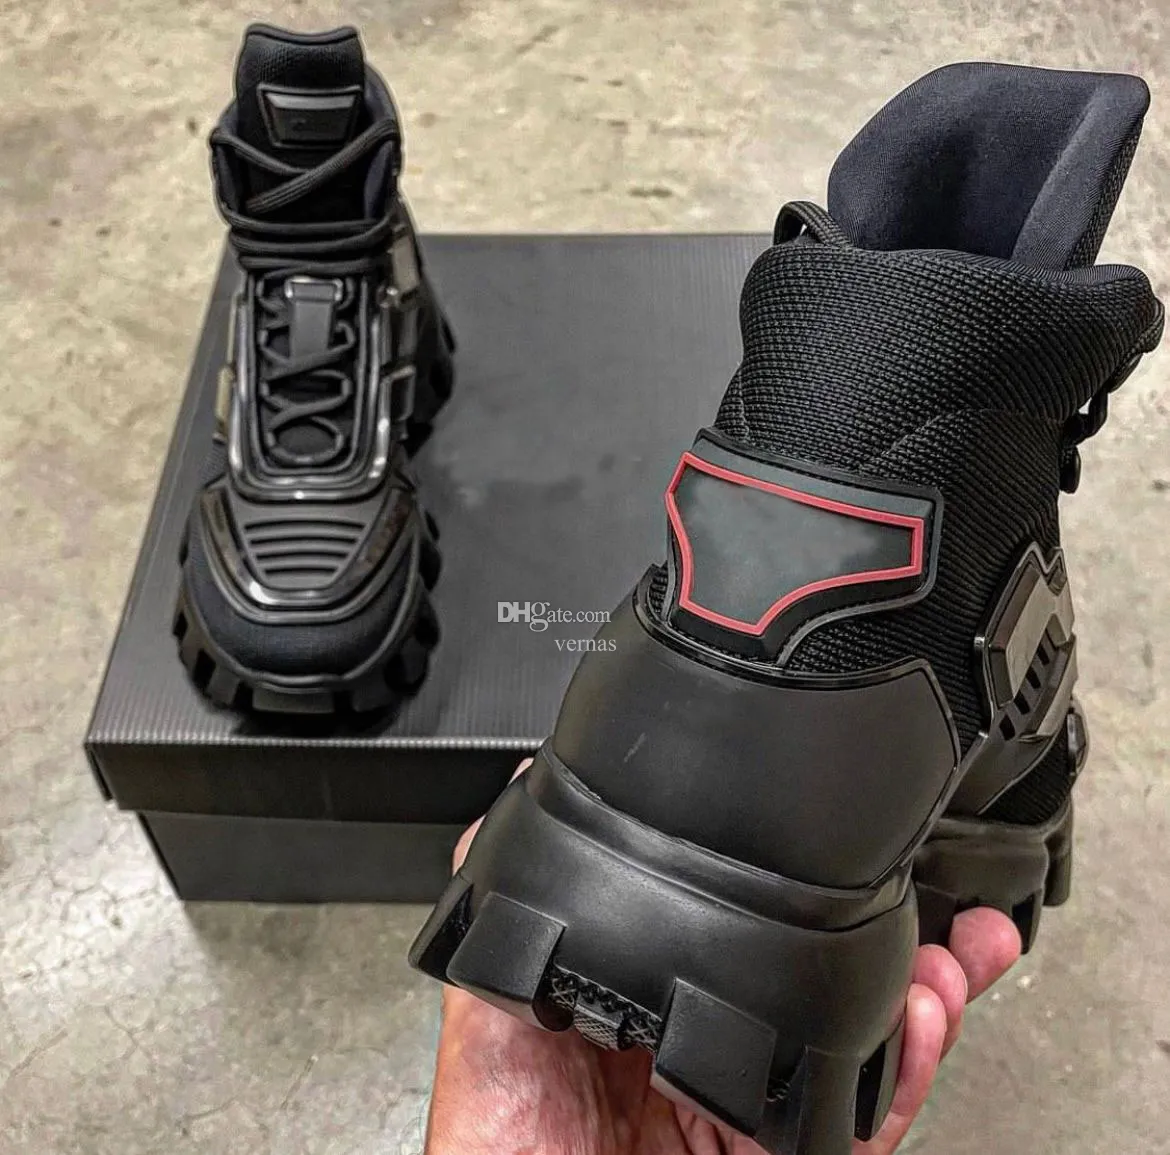 Высококачественные мужские кроссовки обувь Cloudbust Thunder 3D Металлические повседневные спортивные технические ткани легкие бегуны Eu38-46